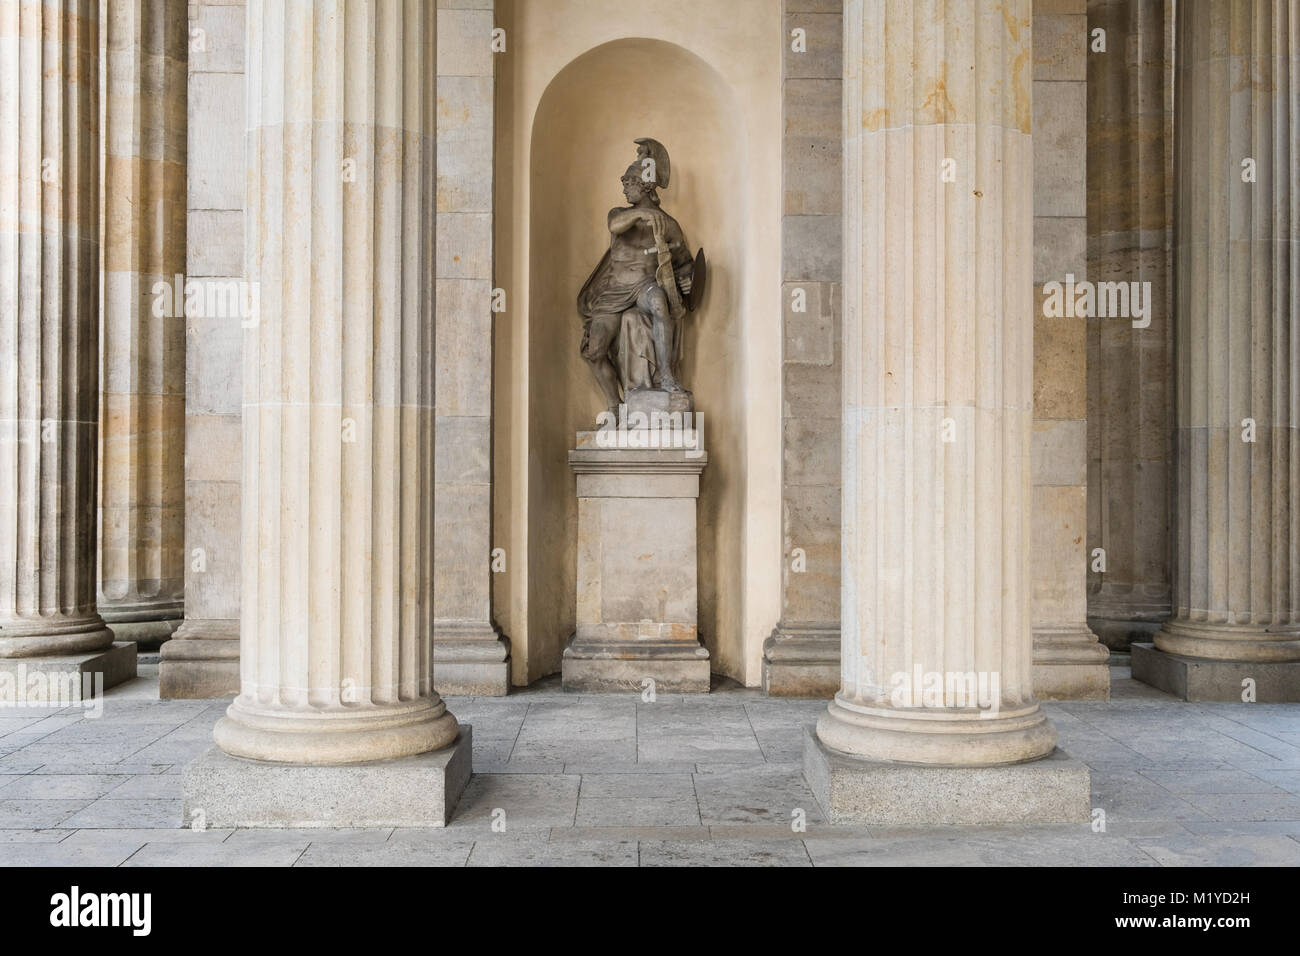 Berlín, Alemania - Enero 2018: escultura histórica del griego antiguo soldado dentro de la Puerta de Brandenburgo en Berlín, Alemania Foto de stock